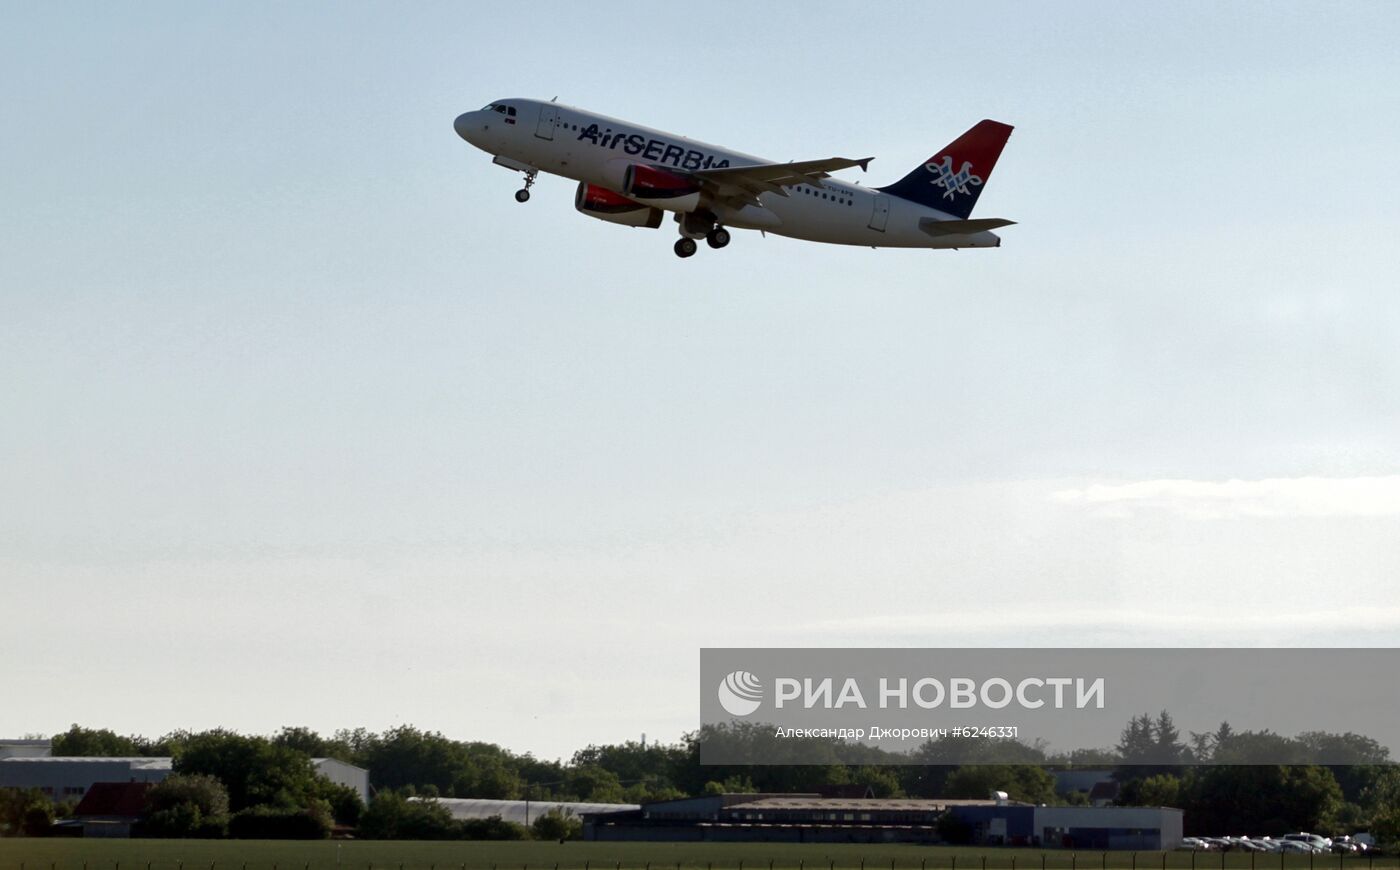 Сербия возобновила авиасообщение